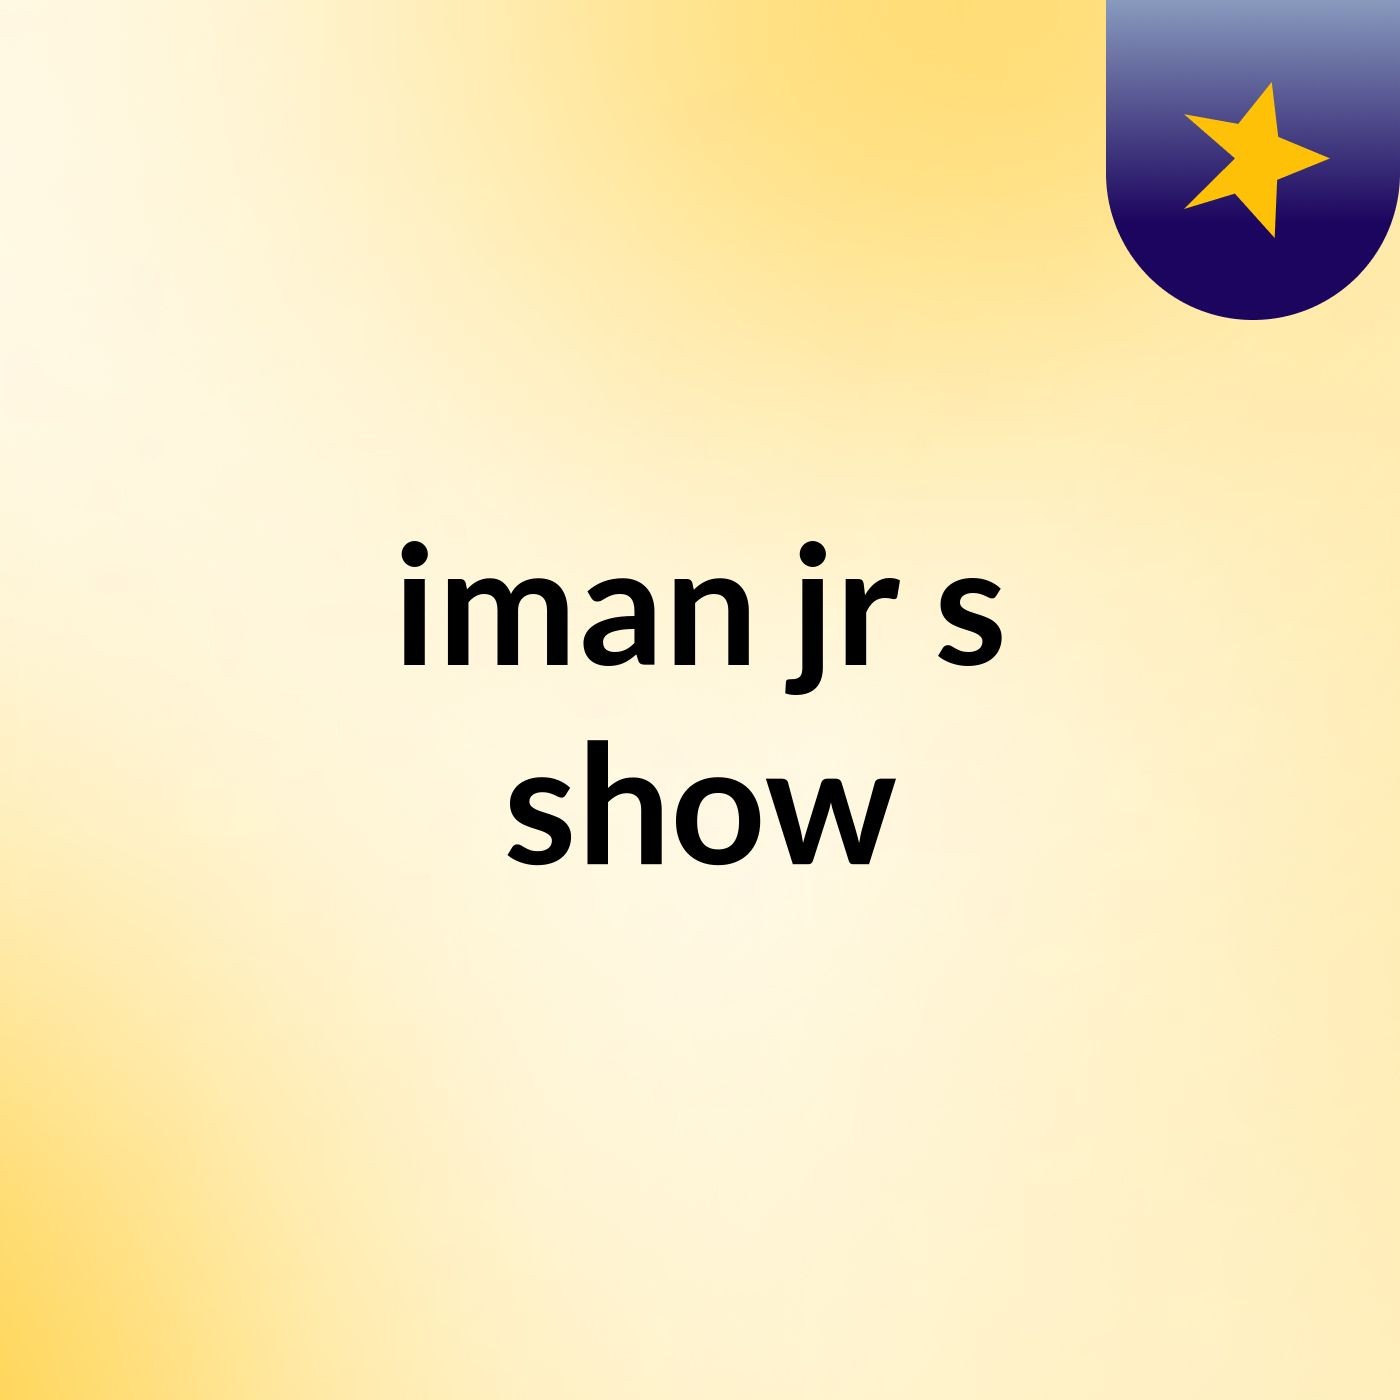 iman jr's show